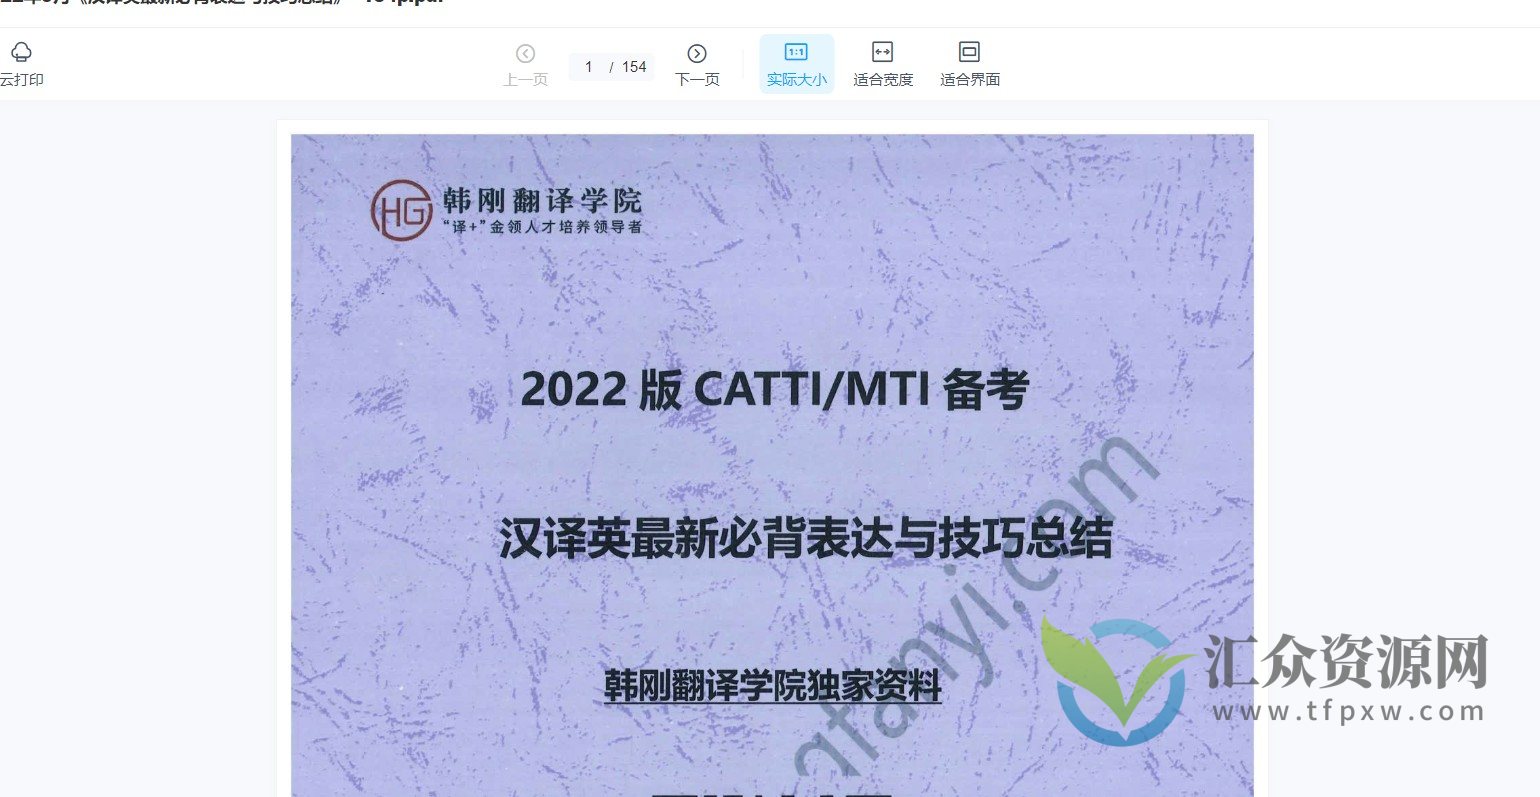 【韩刚翻译学院】2022版CATTI MTI备考 韩刚2022年9月《最新汉英必备表达》+音频讲解ing插图